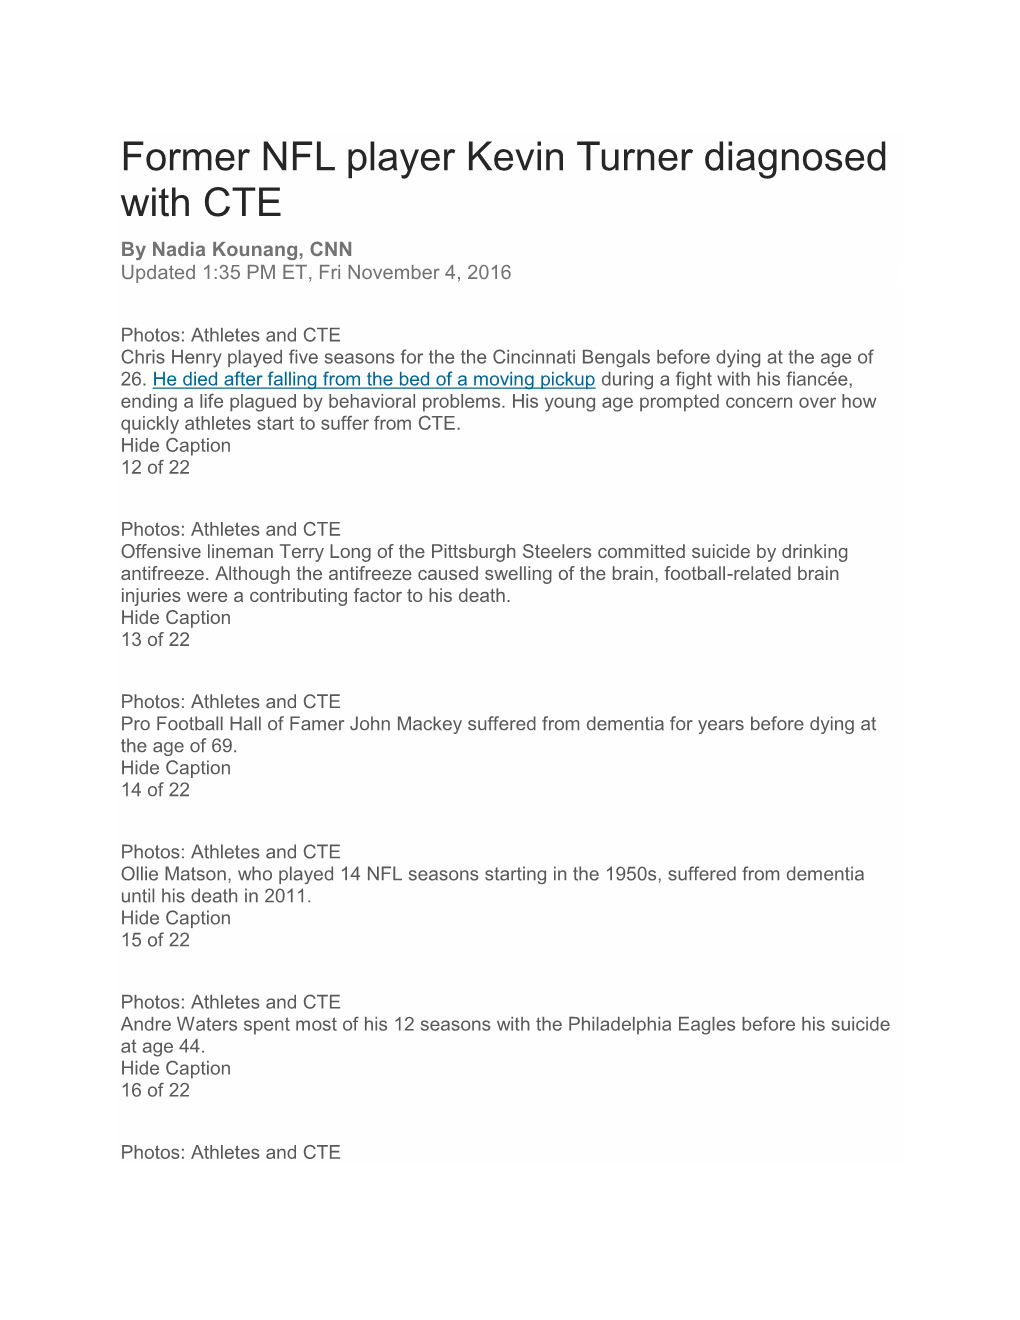 Former NFL Player Kevin Turner Diagnosed with CTE by Nadia Kounang, CNN Updated 1:35 PM ET, Fri November 4, 2016